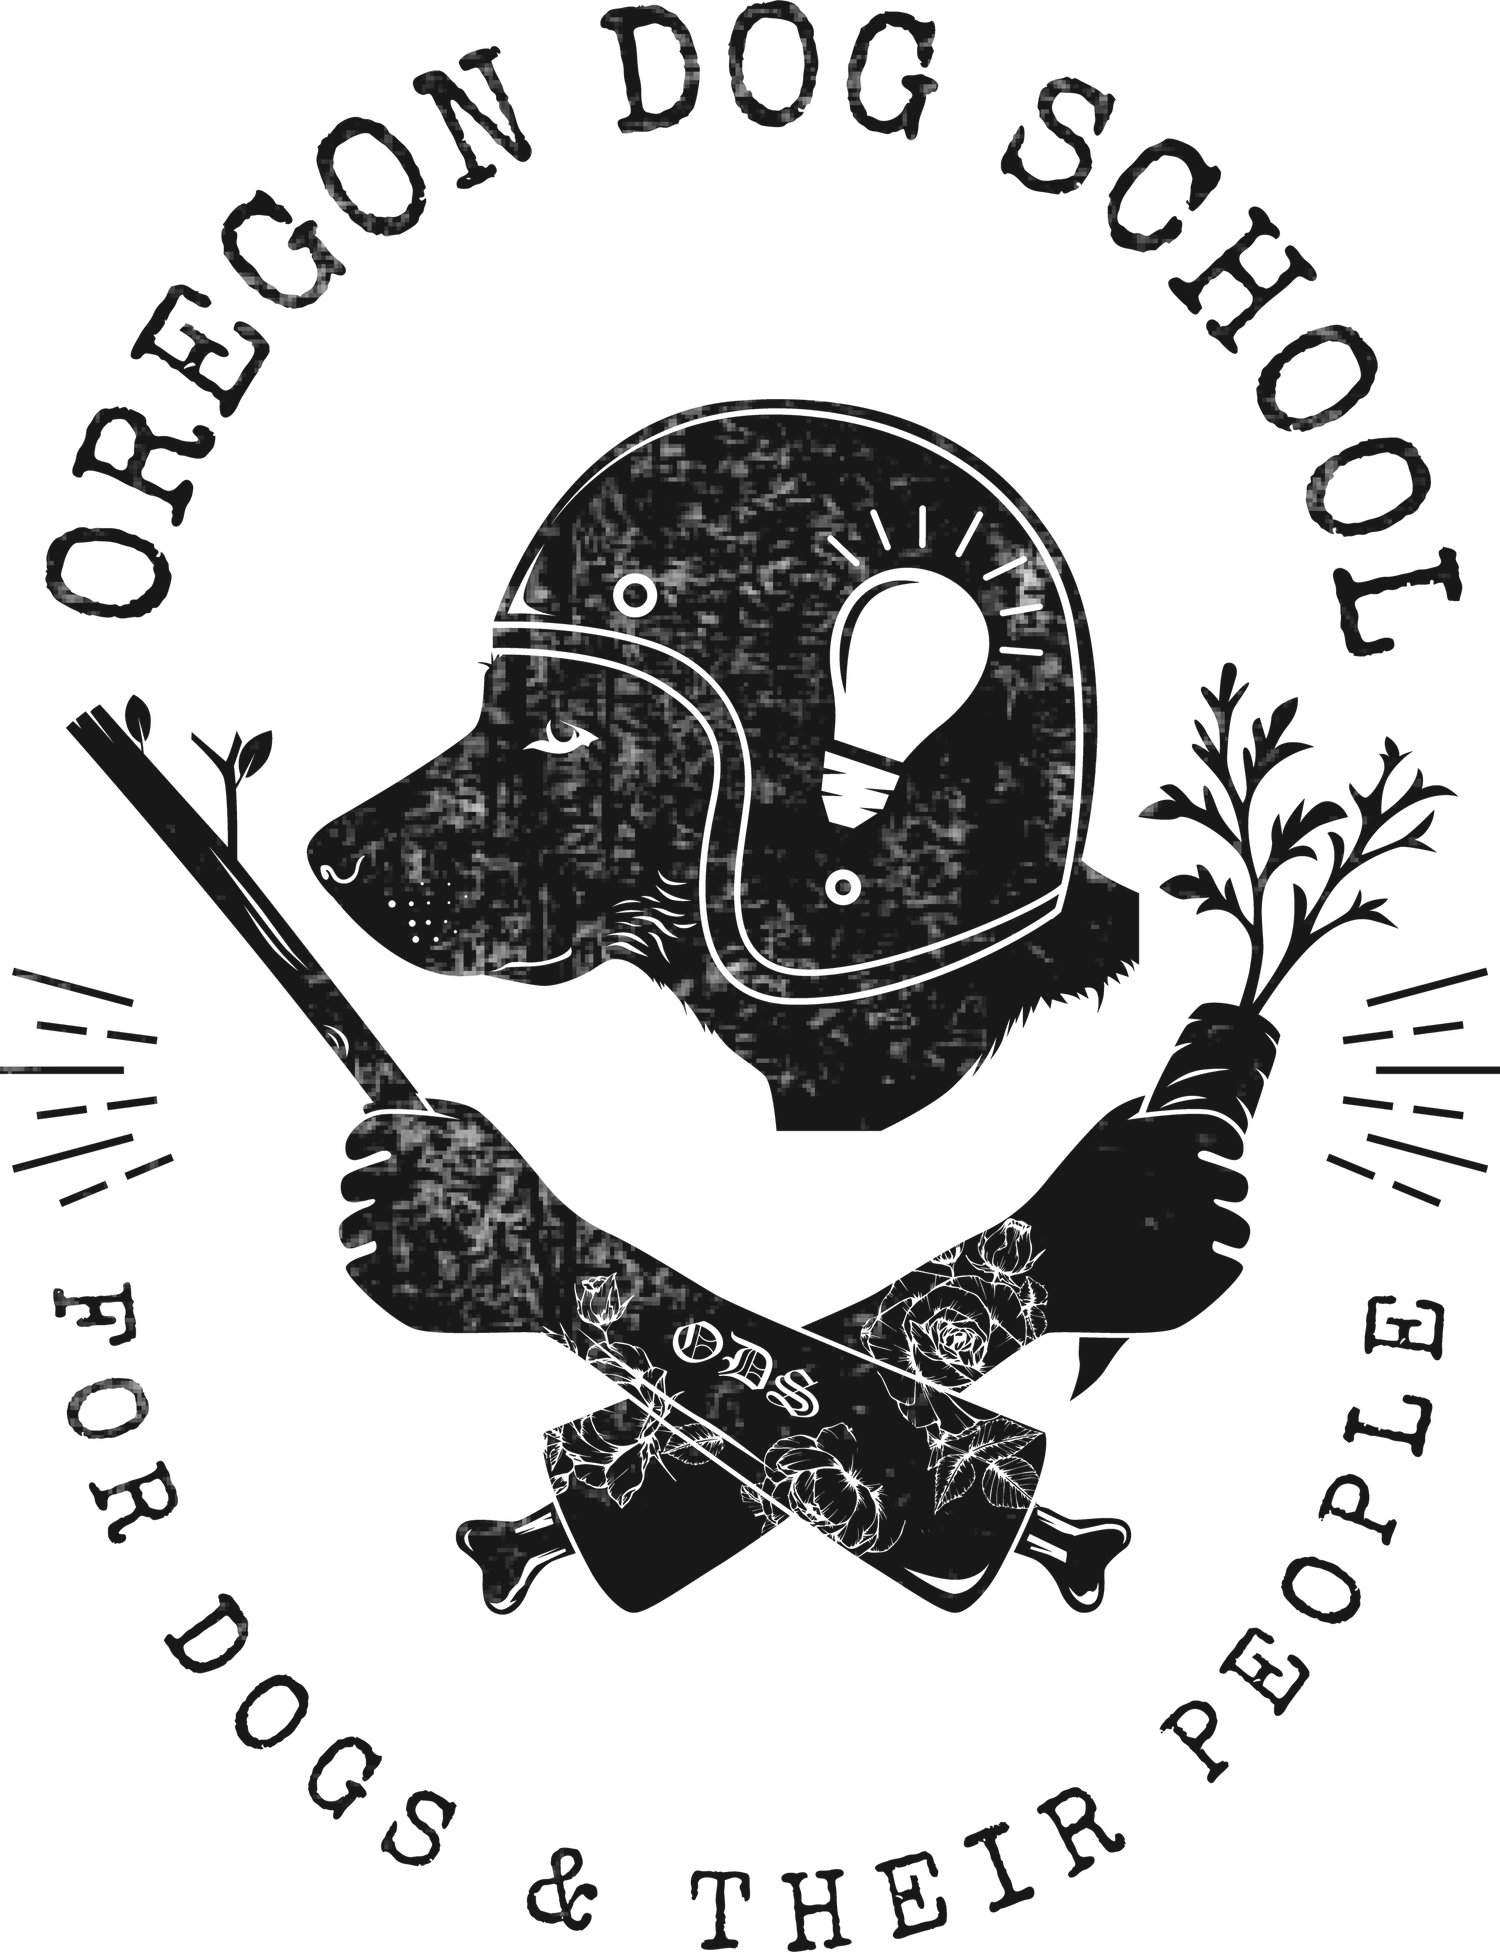 Oregon Dog School